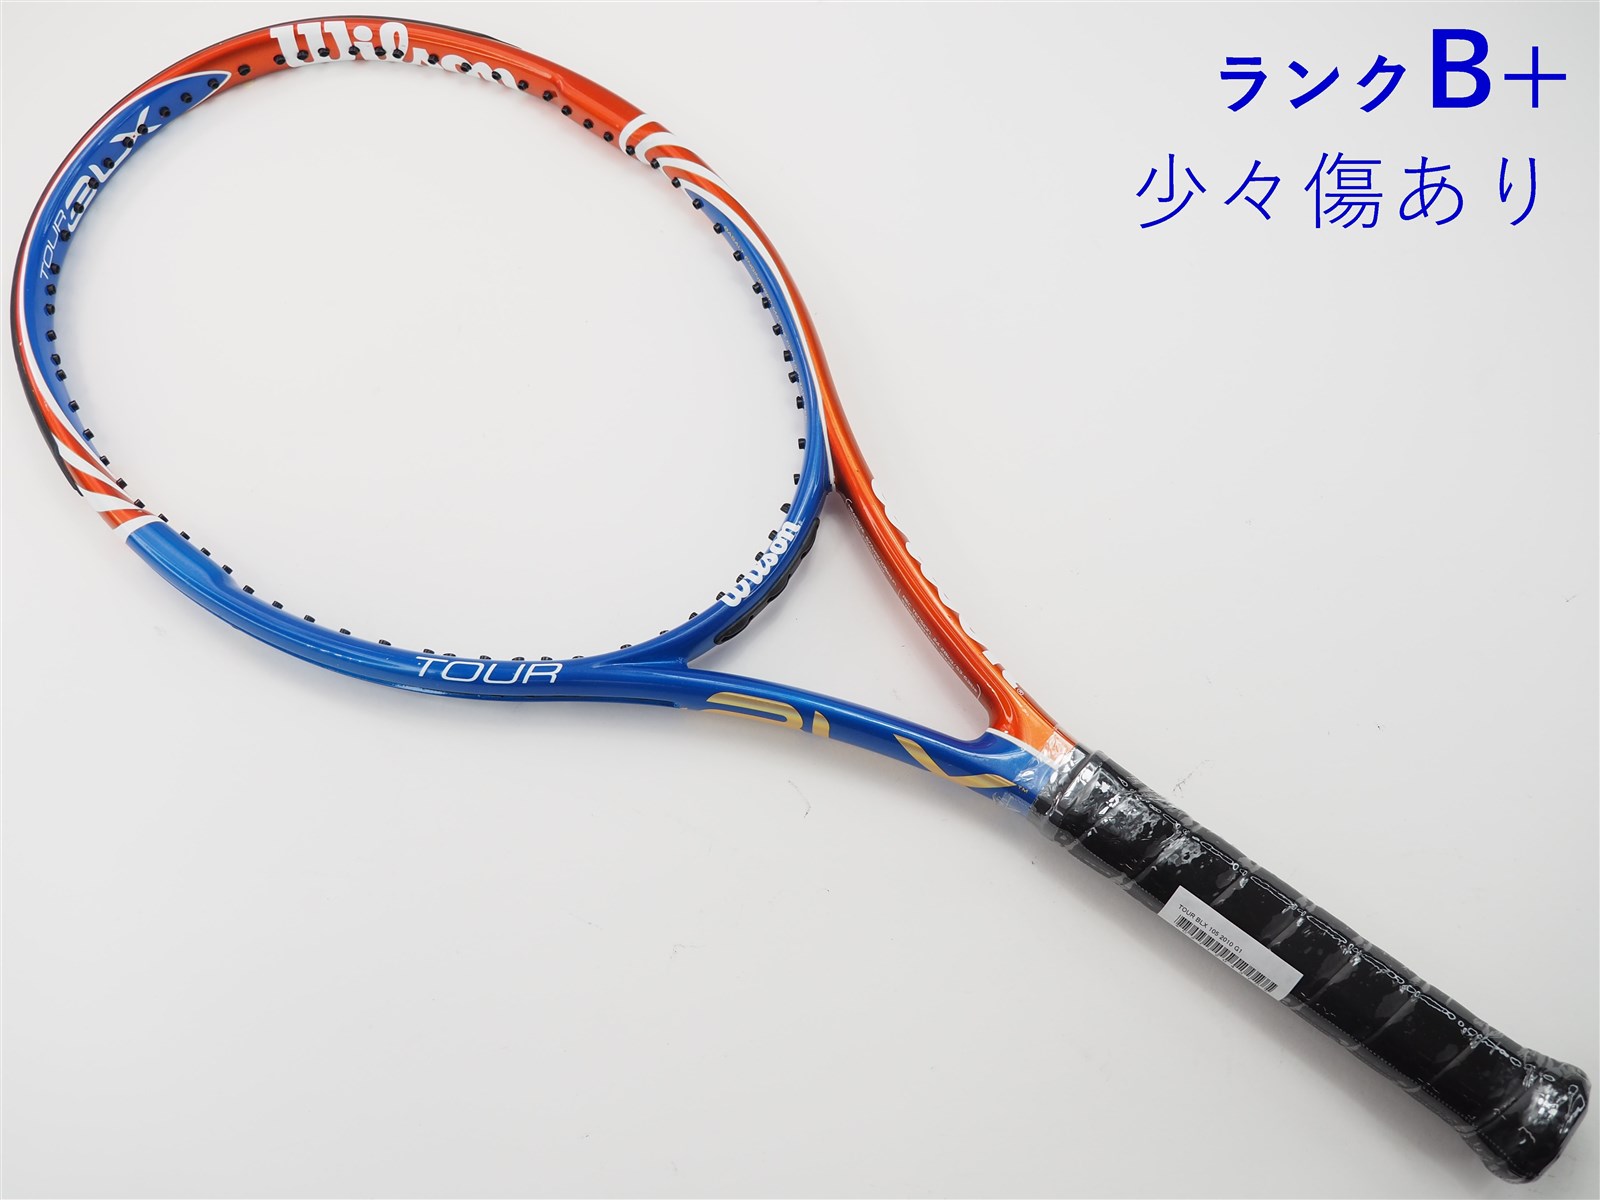 テニスラケット ウィルソン ツアー BLX 105 2010年モデル (G1)WILSON